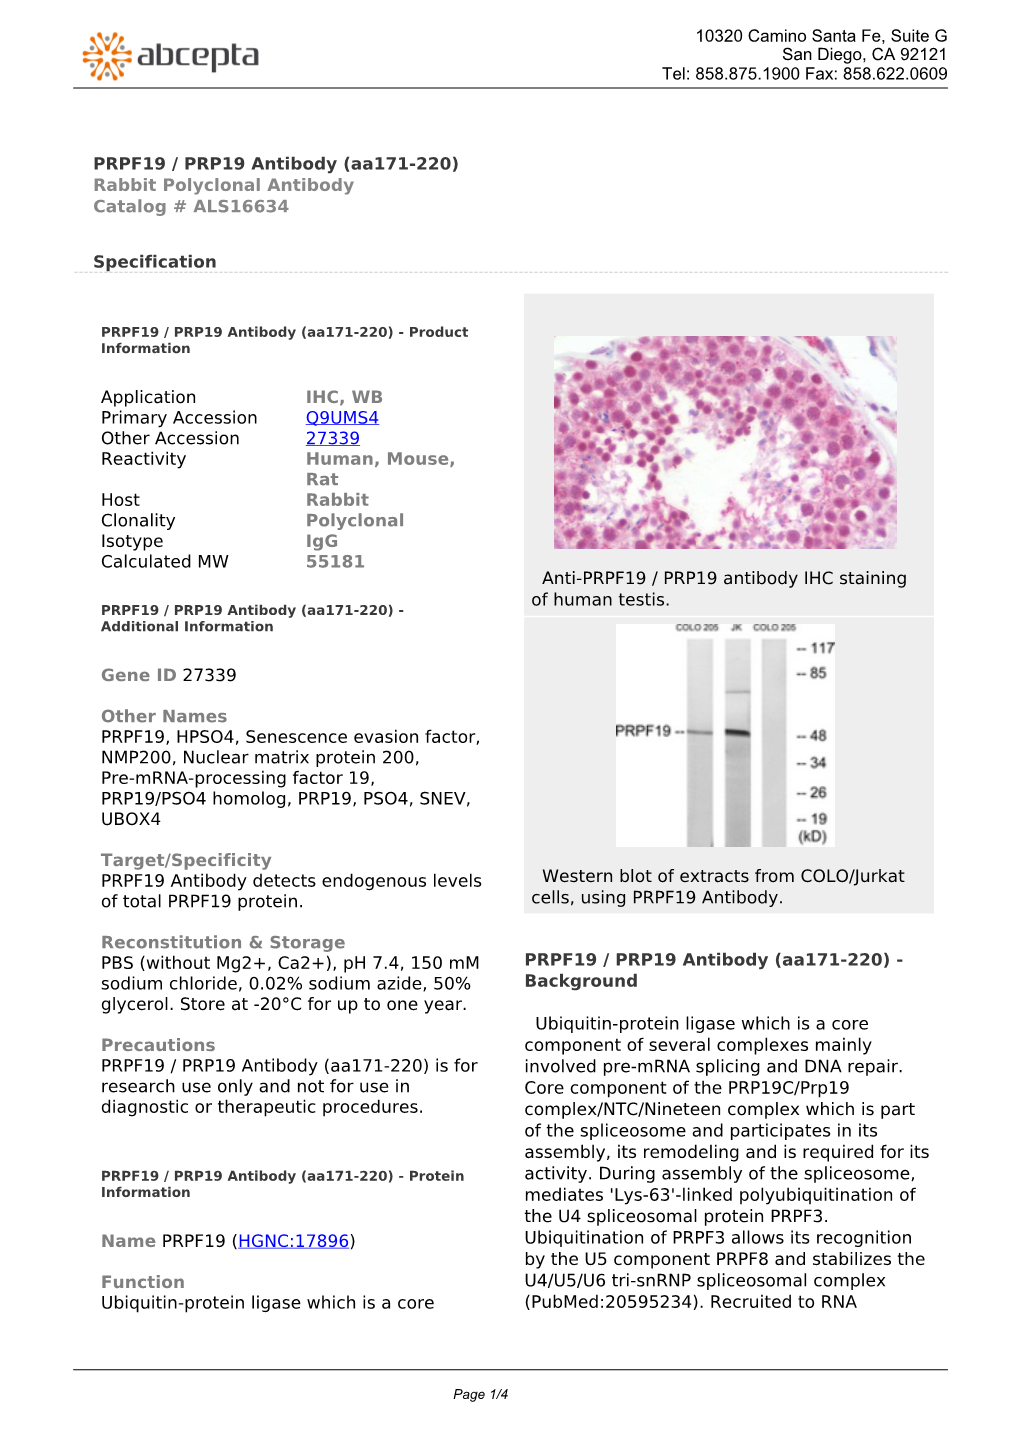 PRPF19 / PRP19 Antibody (Aa171-220) Rabbit Polyclonal Antibody Catalog # ALS16634